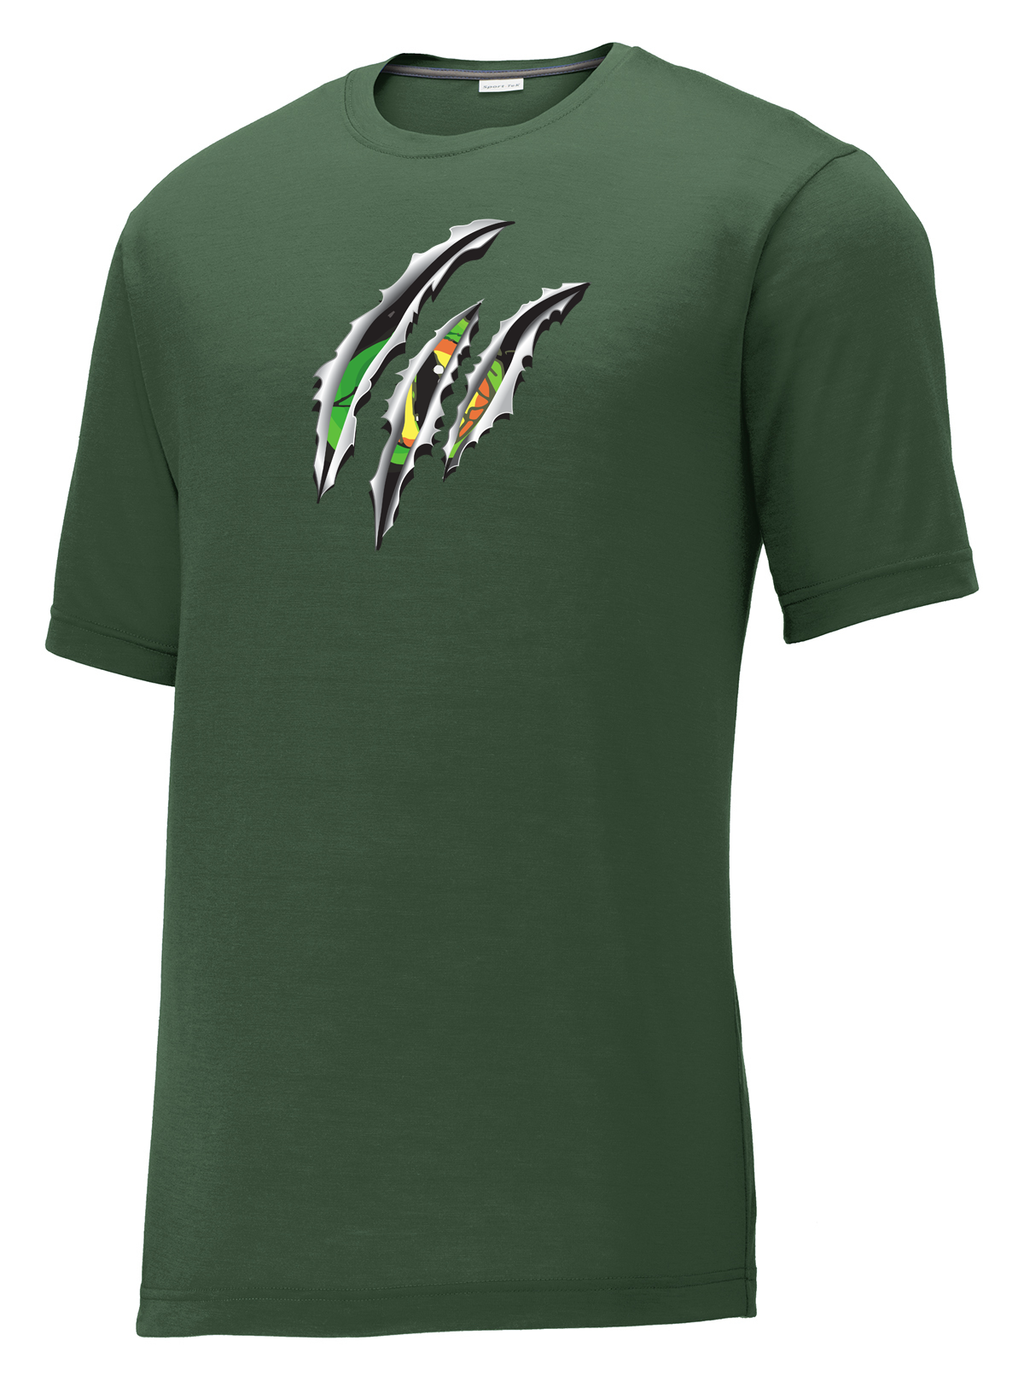 Raptors Lacrosse CottonTouch Performance T-Shirt